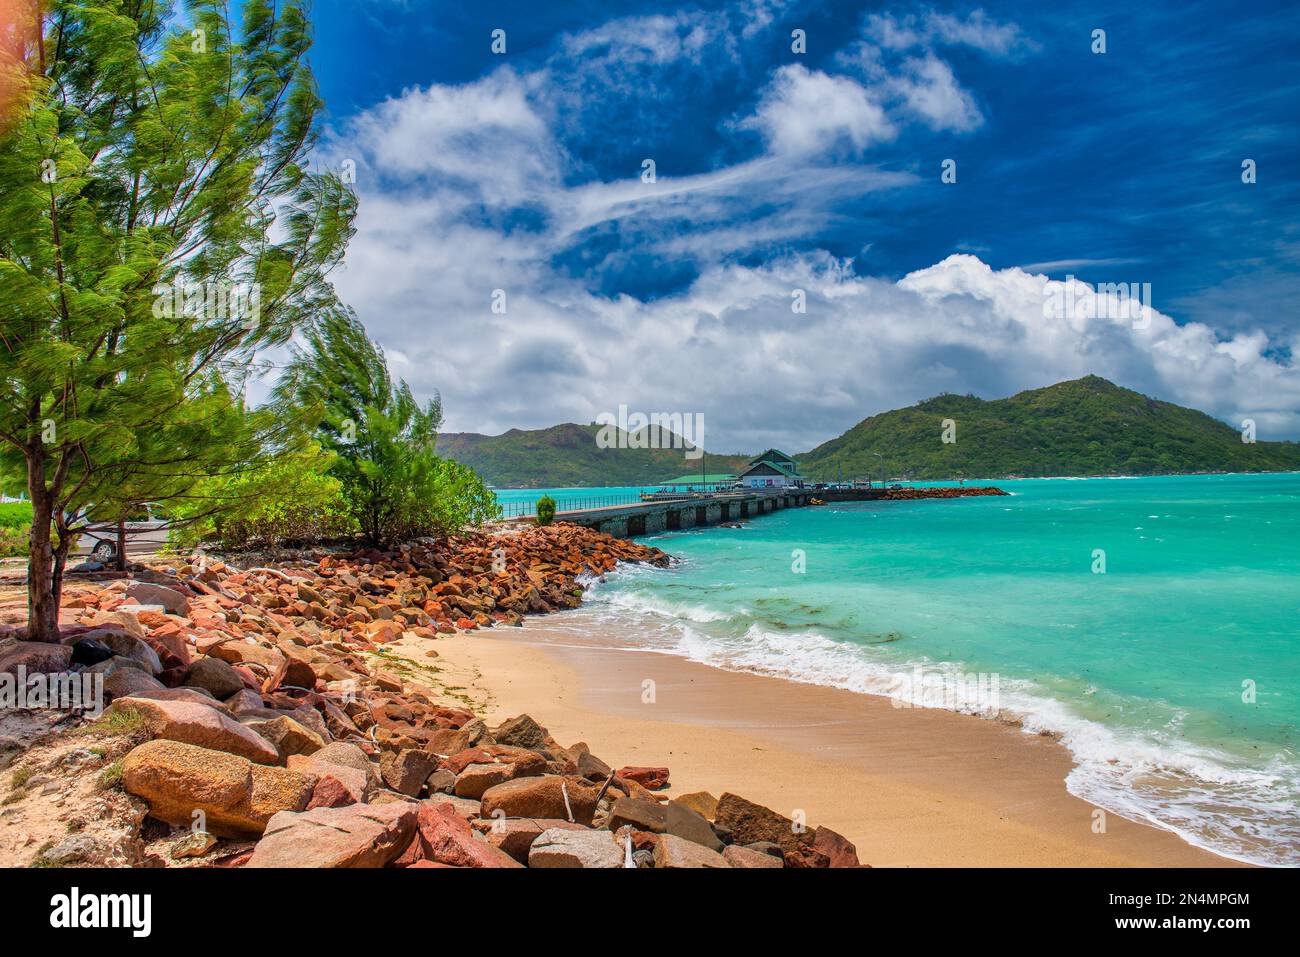 Paysage tropical incroyable de Praslin, Seychelles. Plage et végétation, concept de voyage Banque D'Images